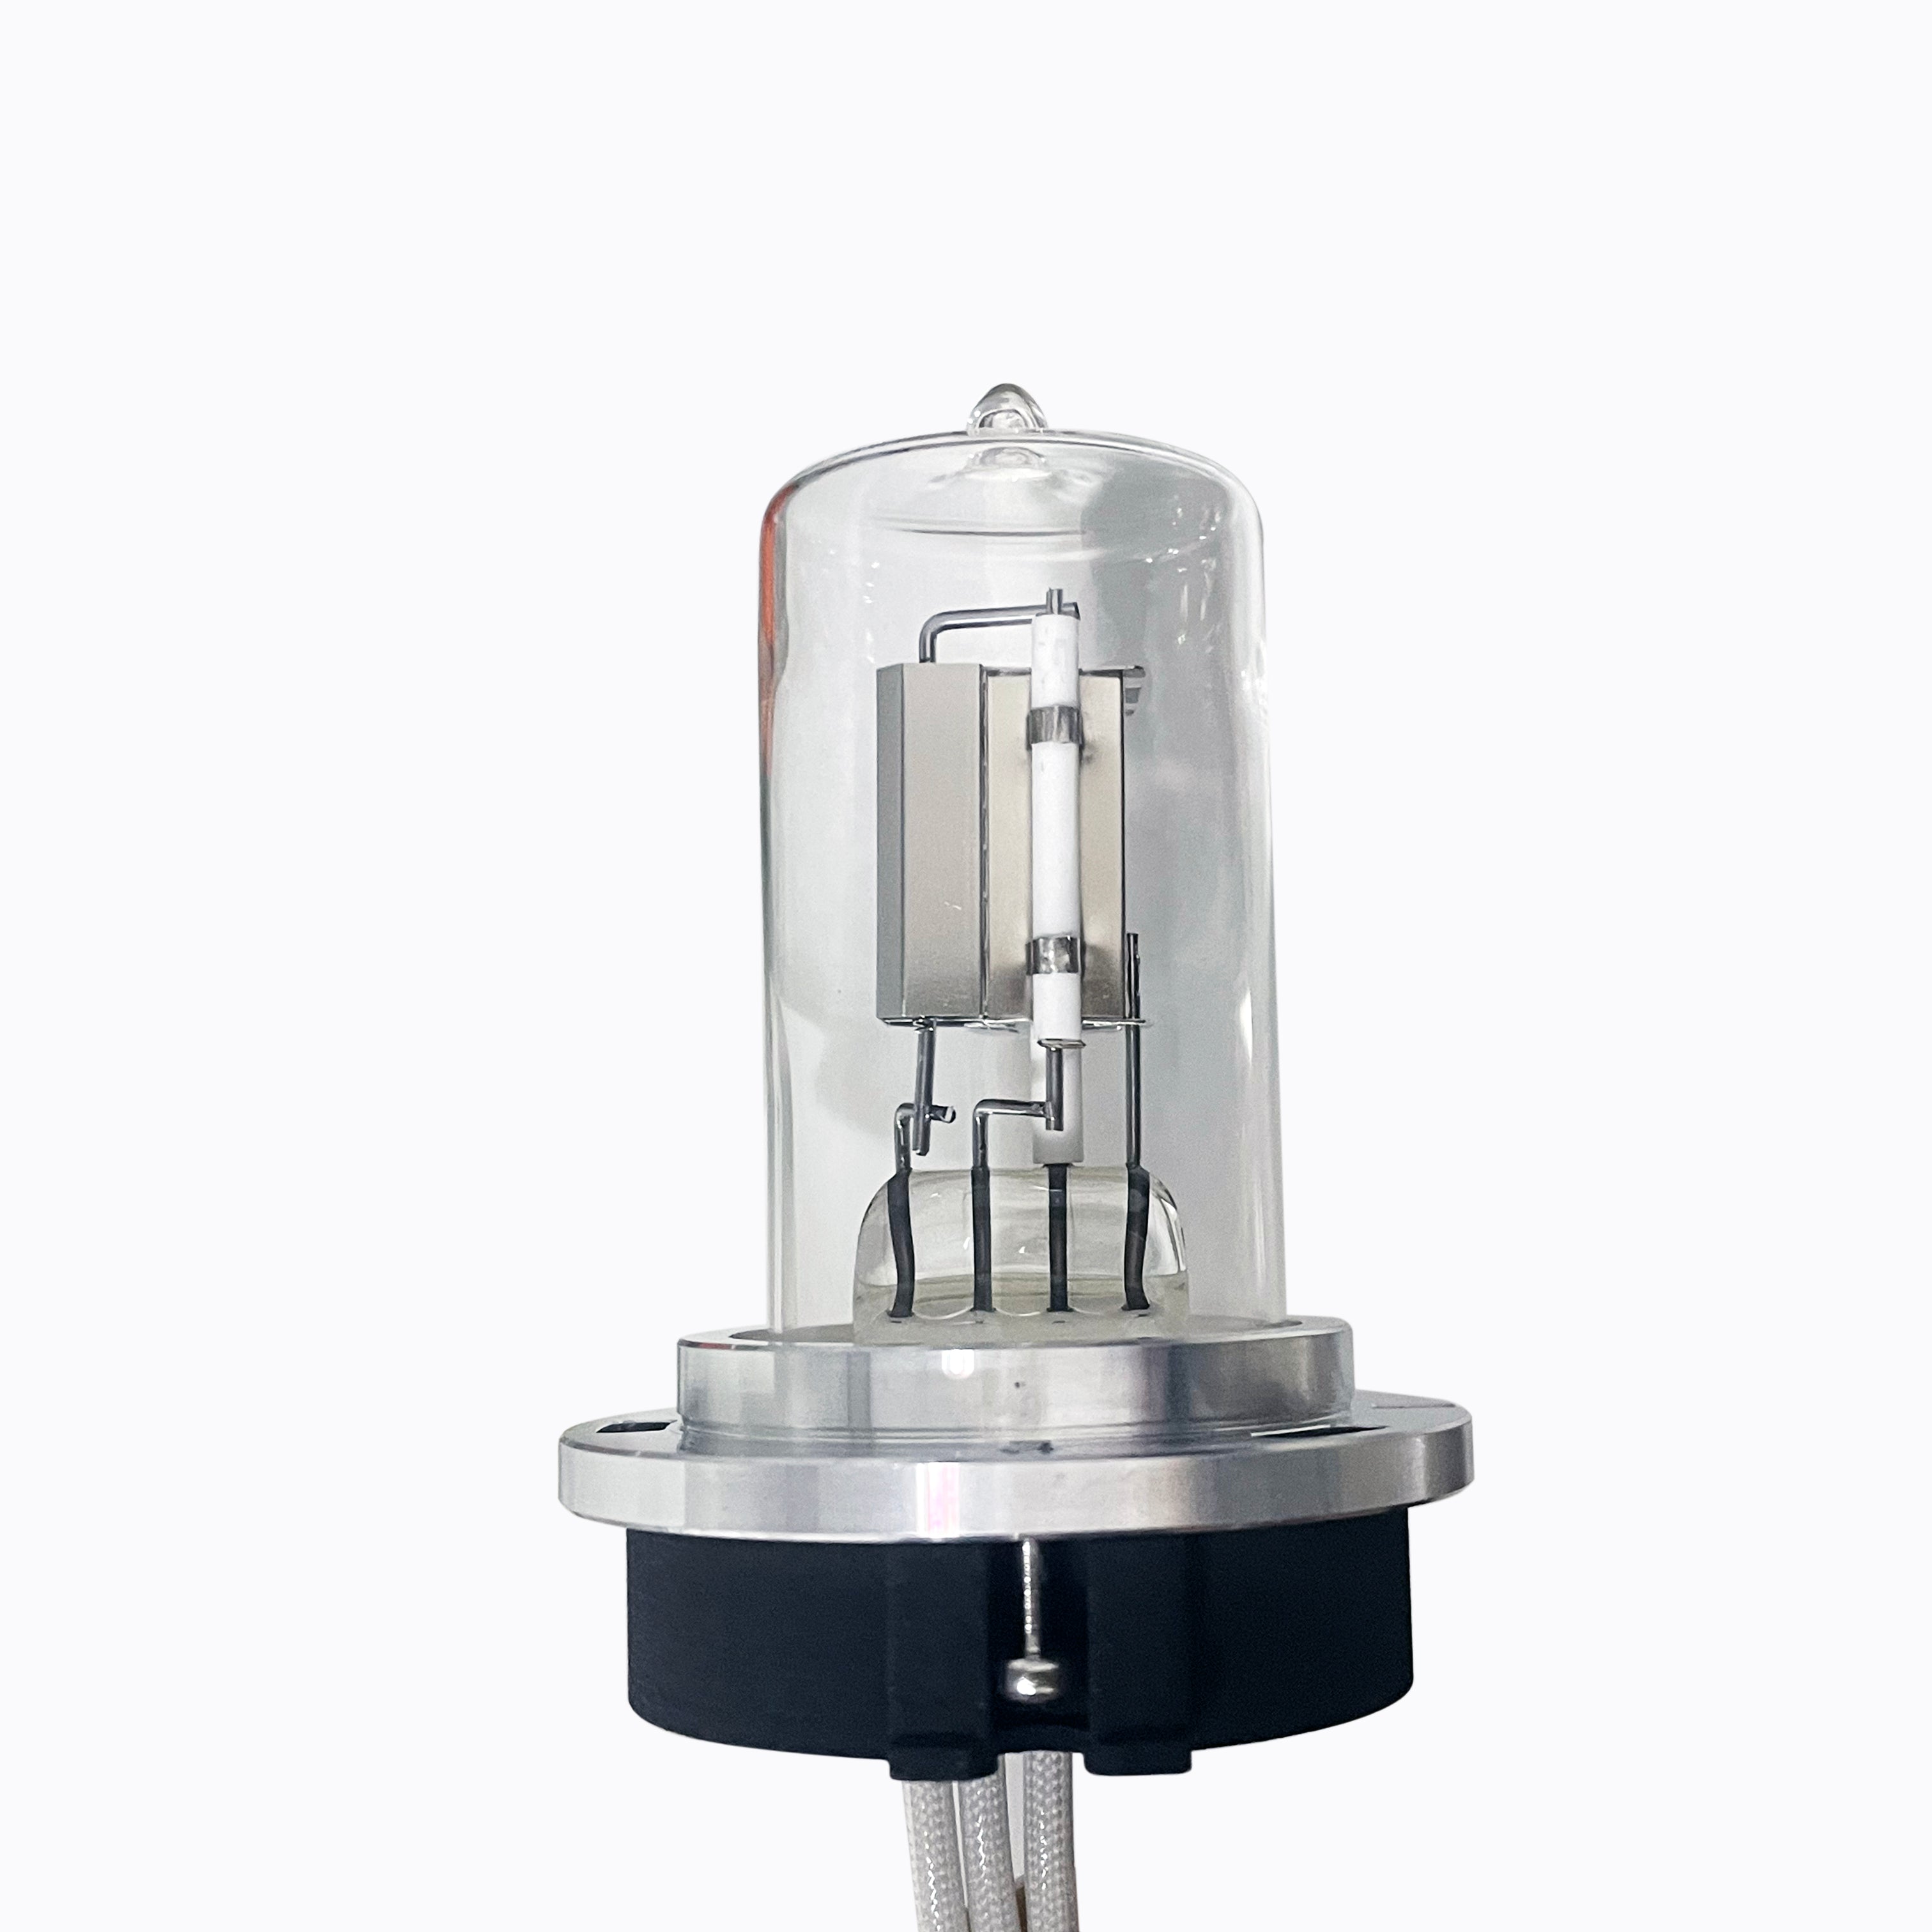 Alternative Agilent Deuterium Lamp G-4212 and G-7117 for DAD